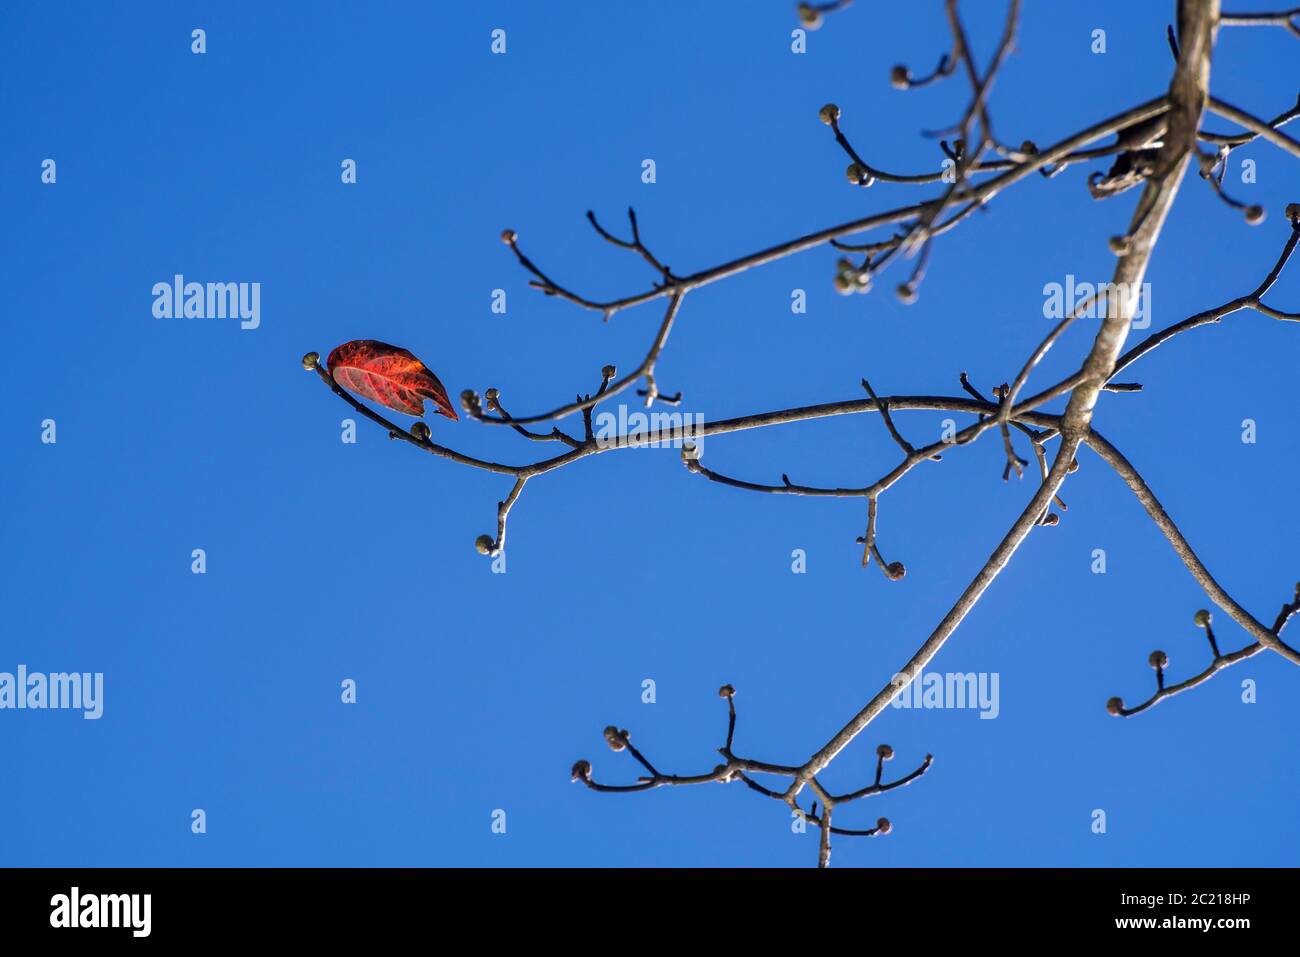 Letzte Überbleibsel der Herbstsaison, ein einziges buntes Blatt, hängt an inmitten der zukünftigen Frühlingsknospen auf einem Florida Dogwood Baum in Nord-Zentral-FL Stockfoto